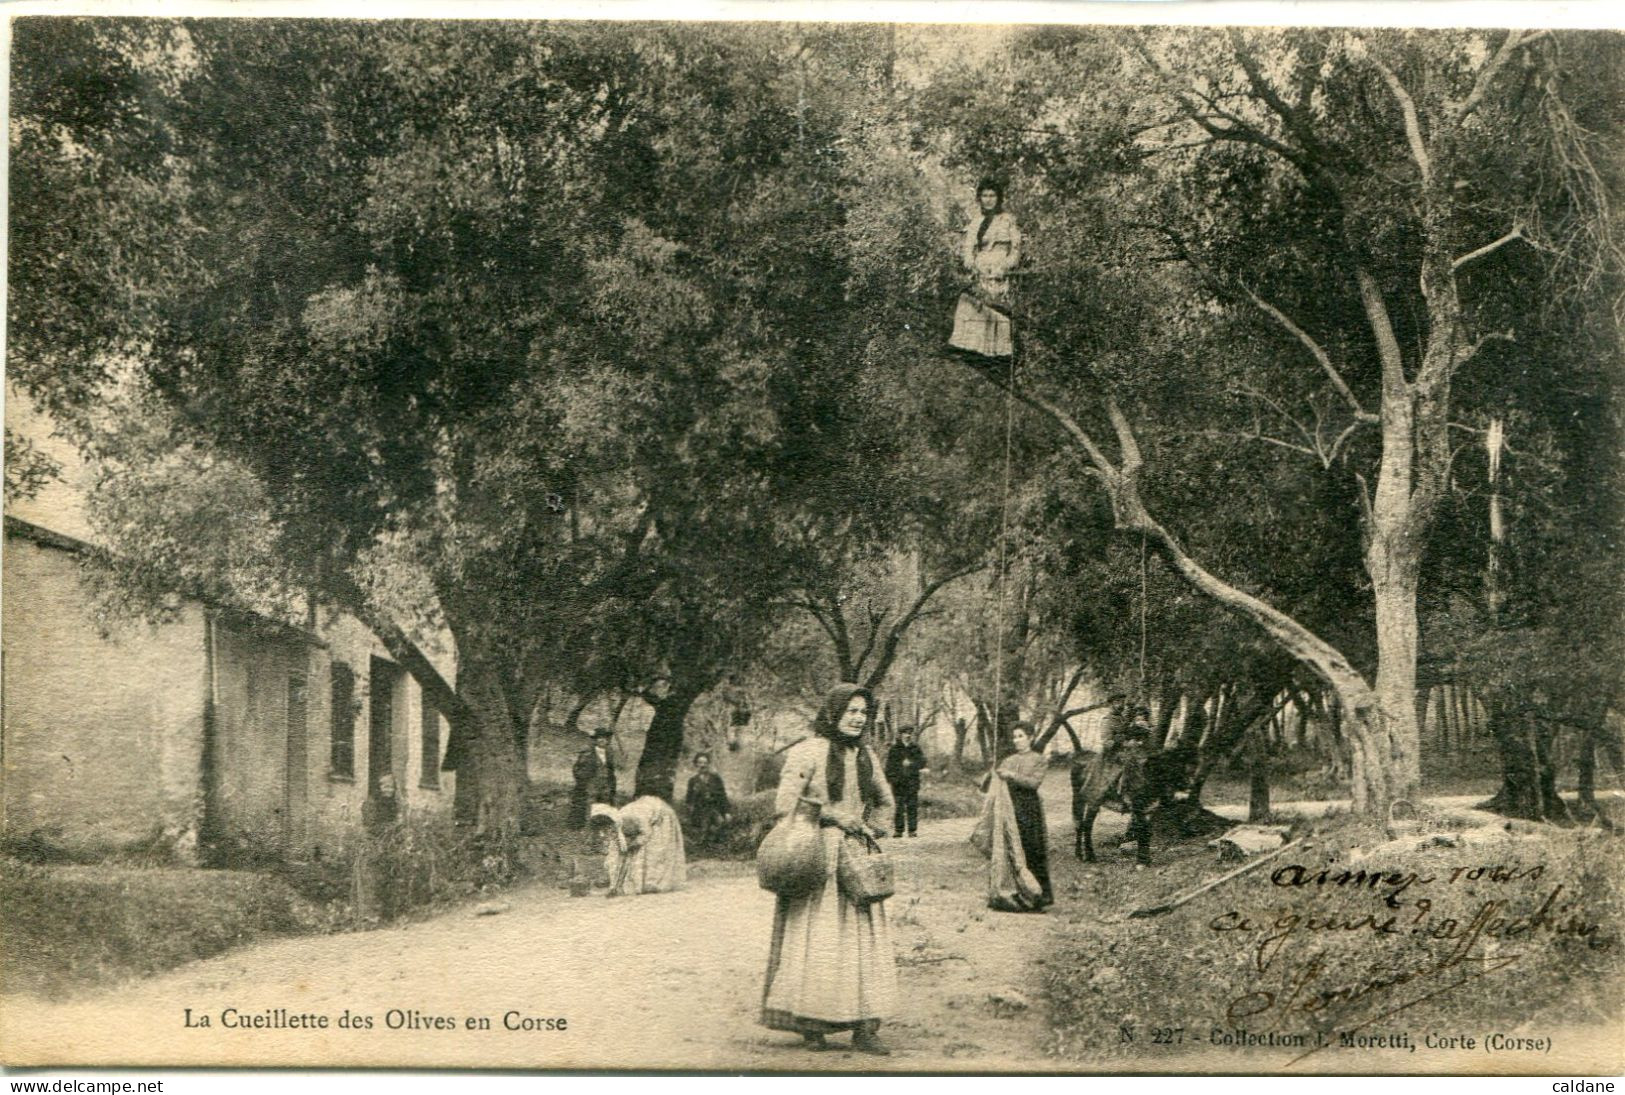 2A-CORSE  -  La Cueillette Des Olives En Corse        Collection J.Moretti,Corte - Cultivation